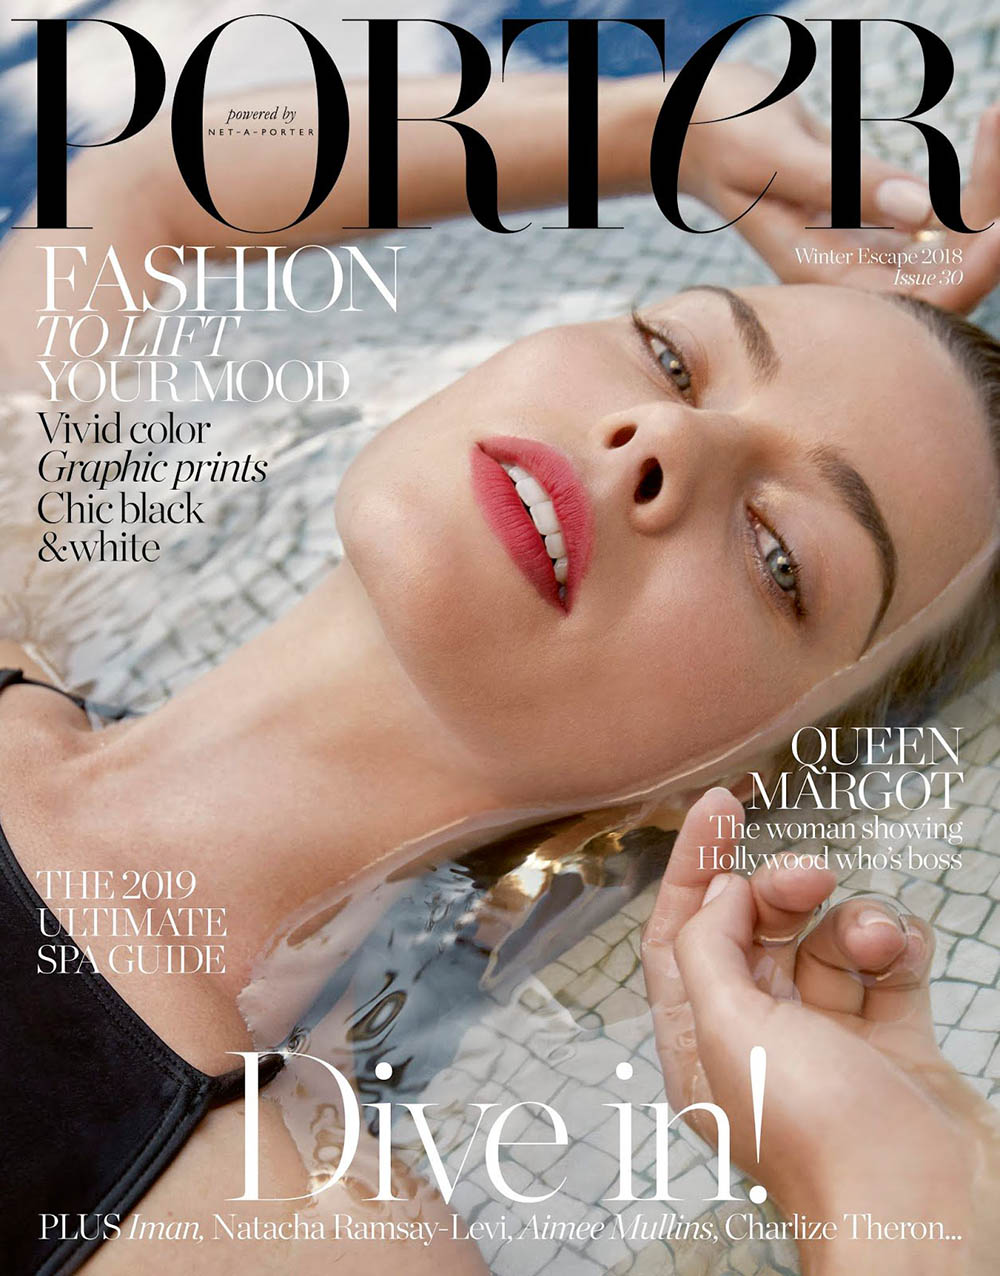 Margot Robbie covers Porter Magazine Winter Escape 2018 by Yelena Yemchuk